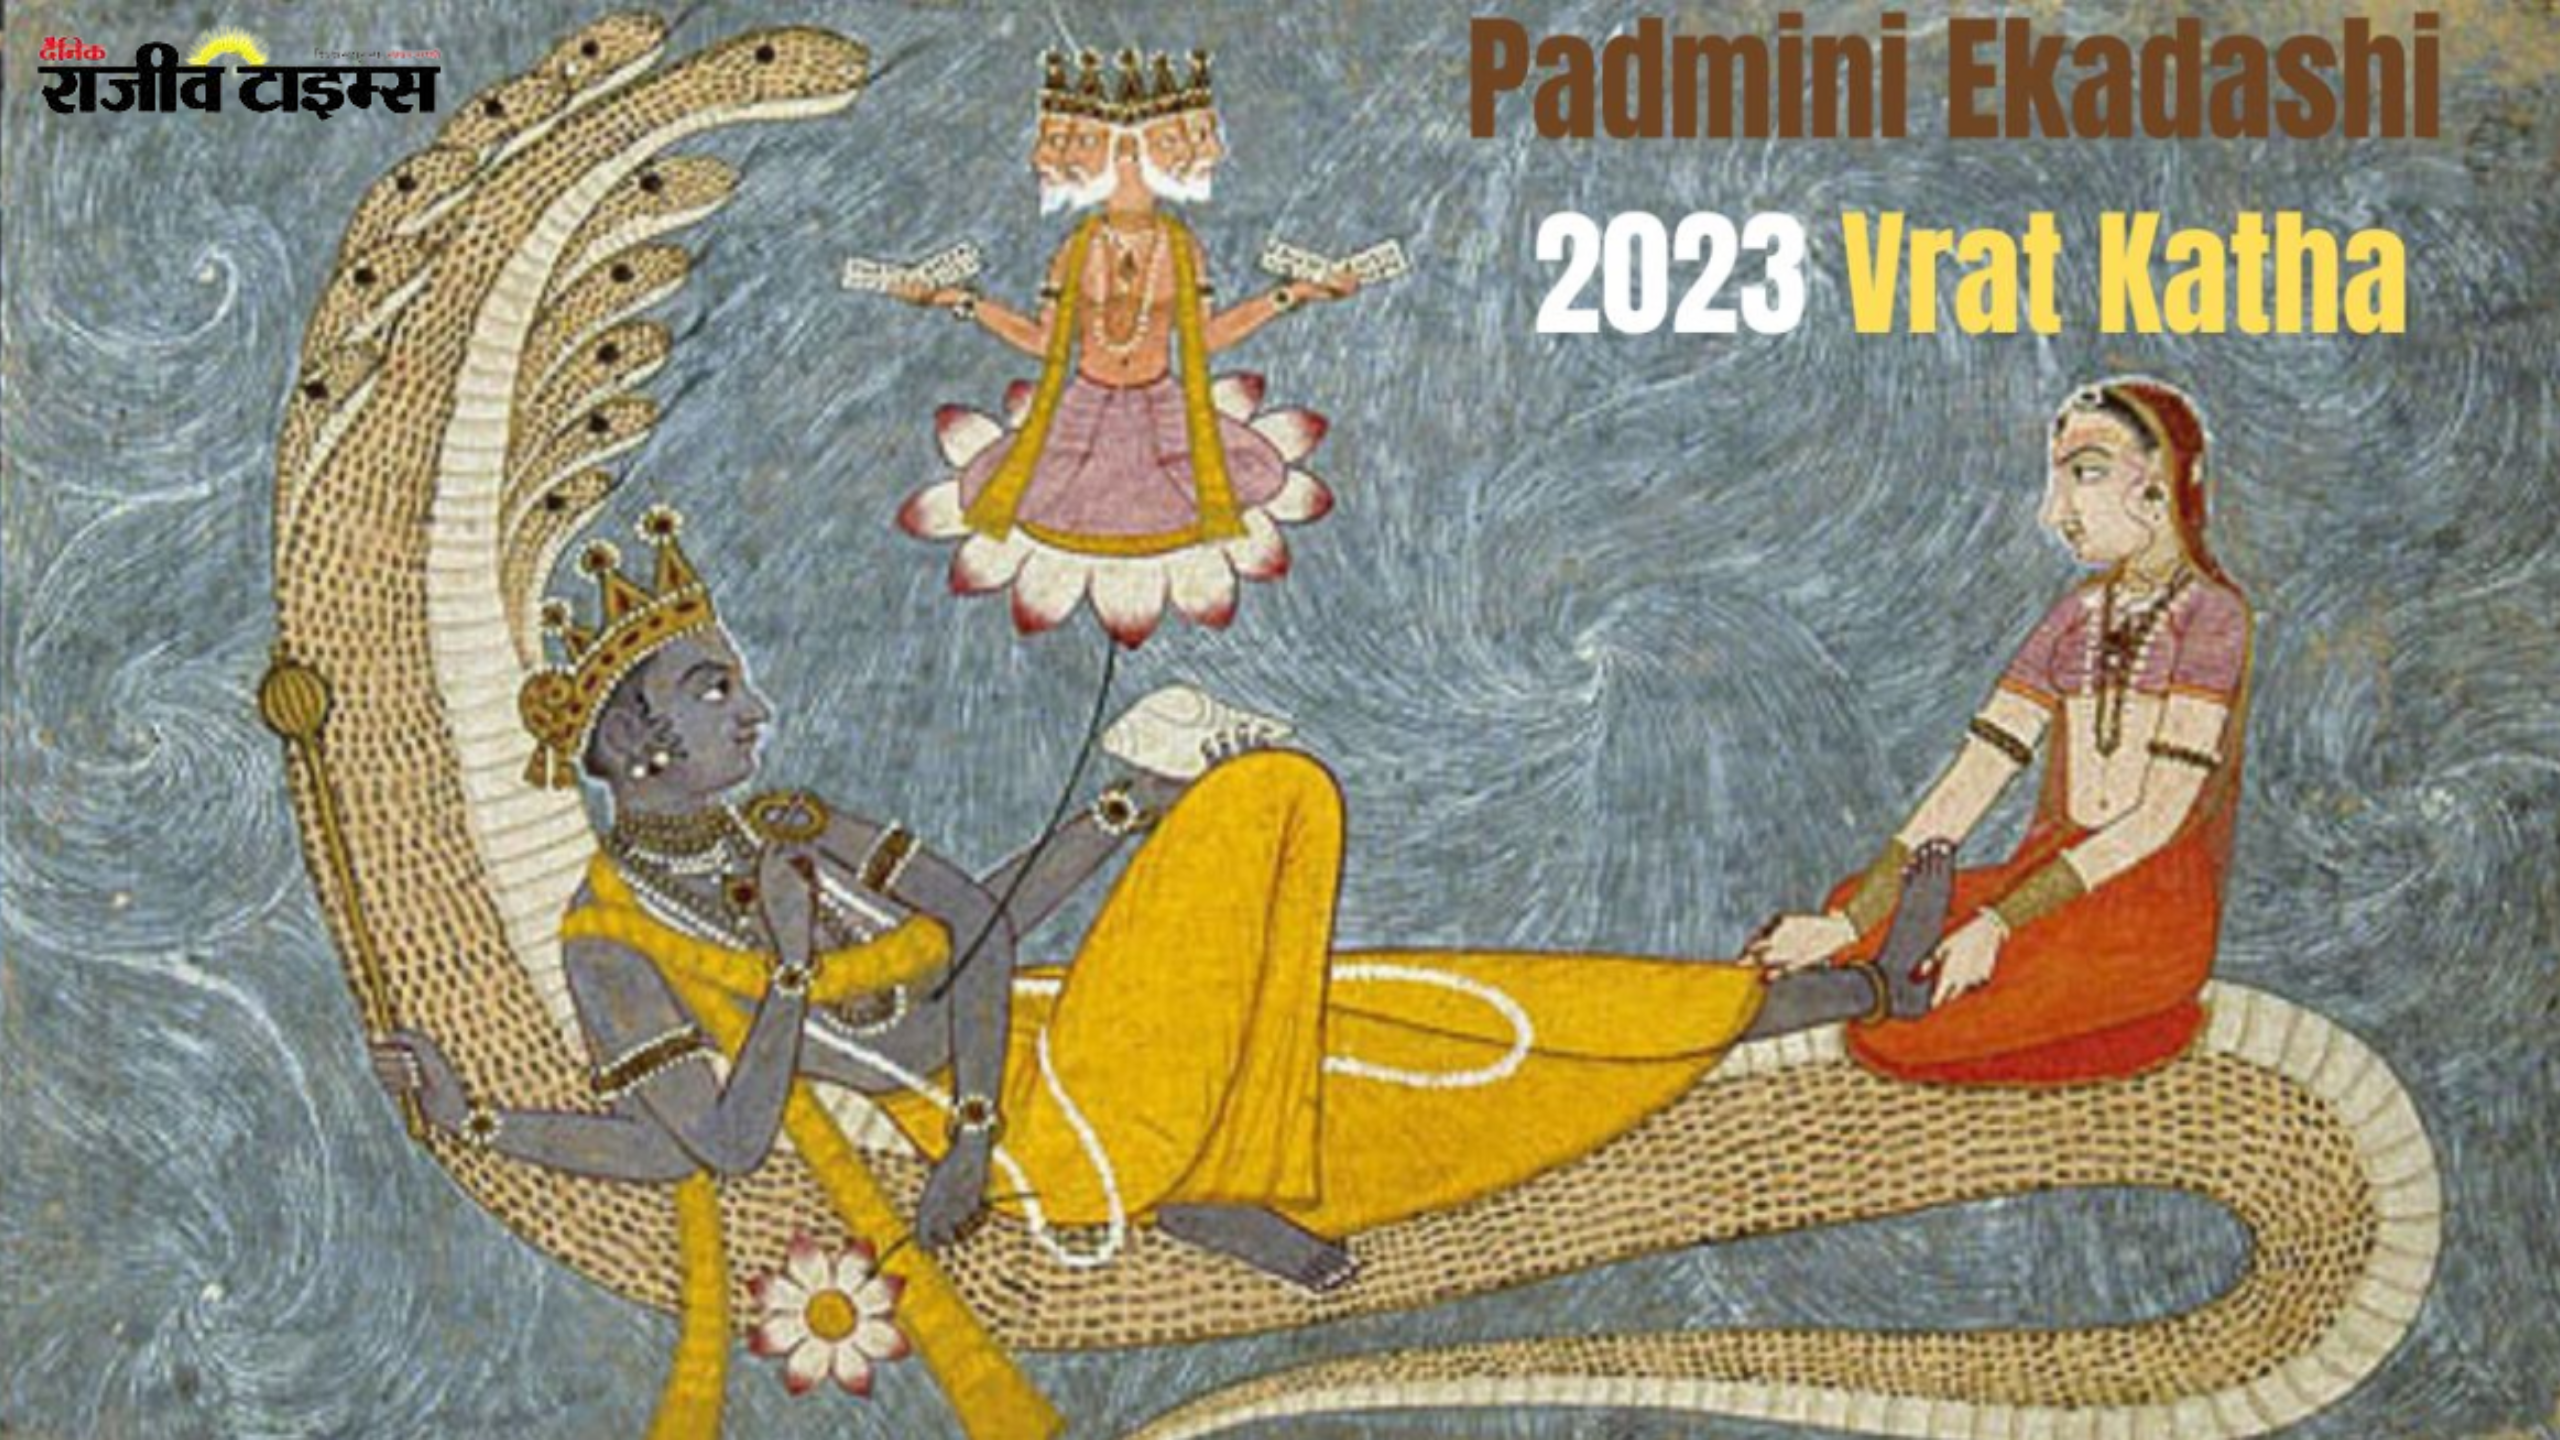 कौन थे राजा कार्तवीर्य, कैसे हुआ पद्मिनी एकादशी के व्रत से उनका जन्म, जानिए पूरी कथा